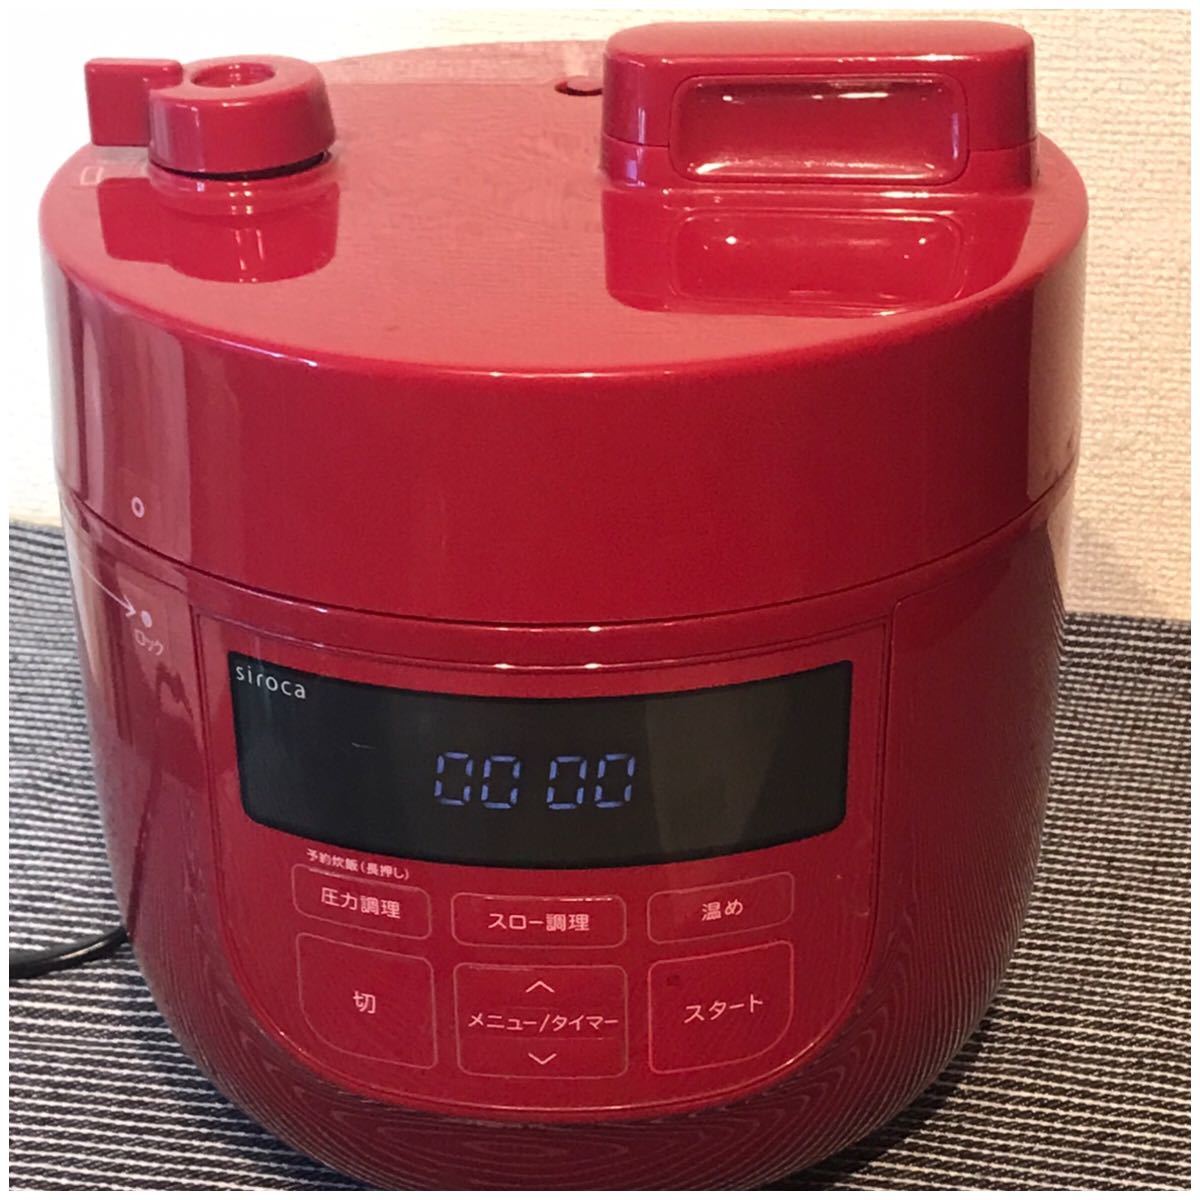 シロカ電気圧力鍋 siroca SP-D131 レッド 赤 調理器 ☆ 2Lモデル